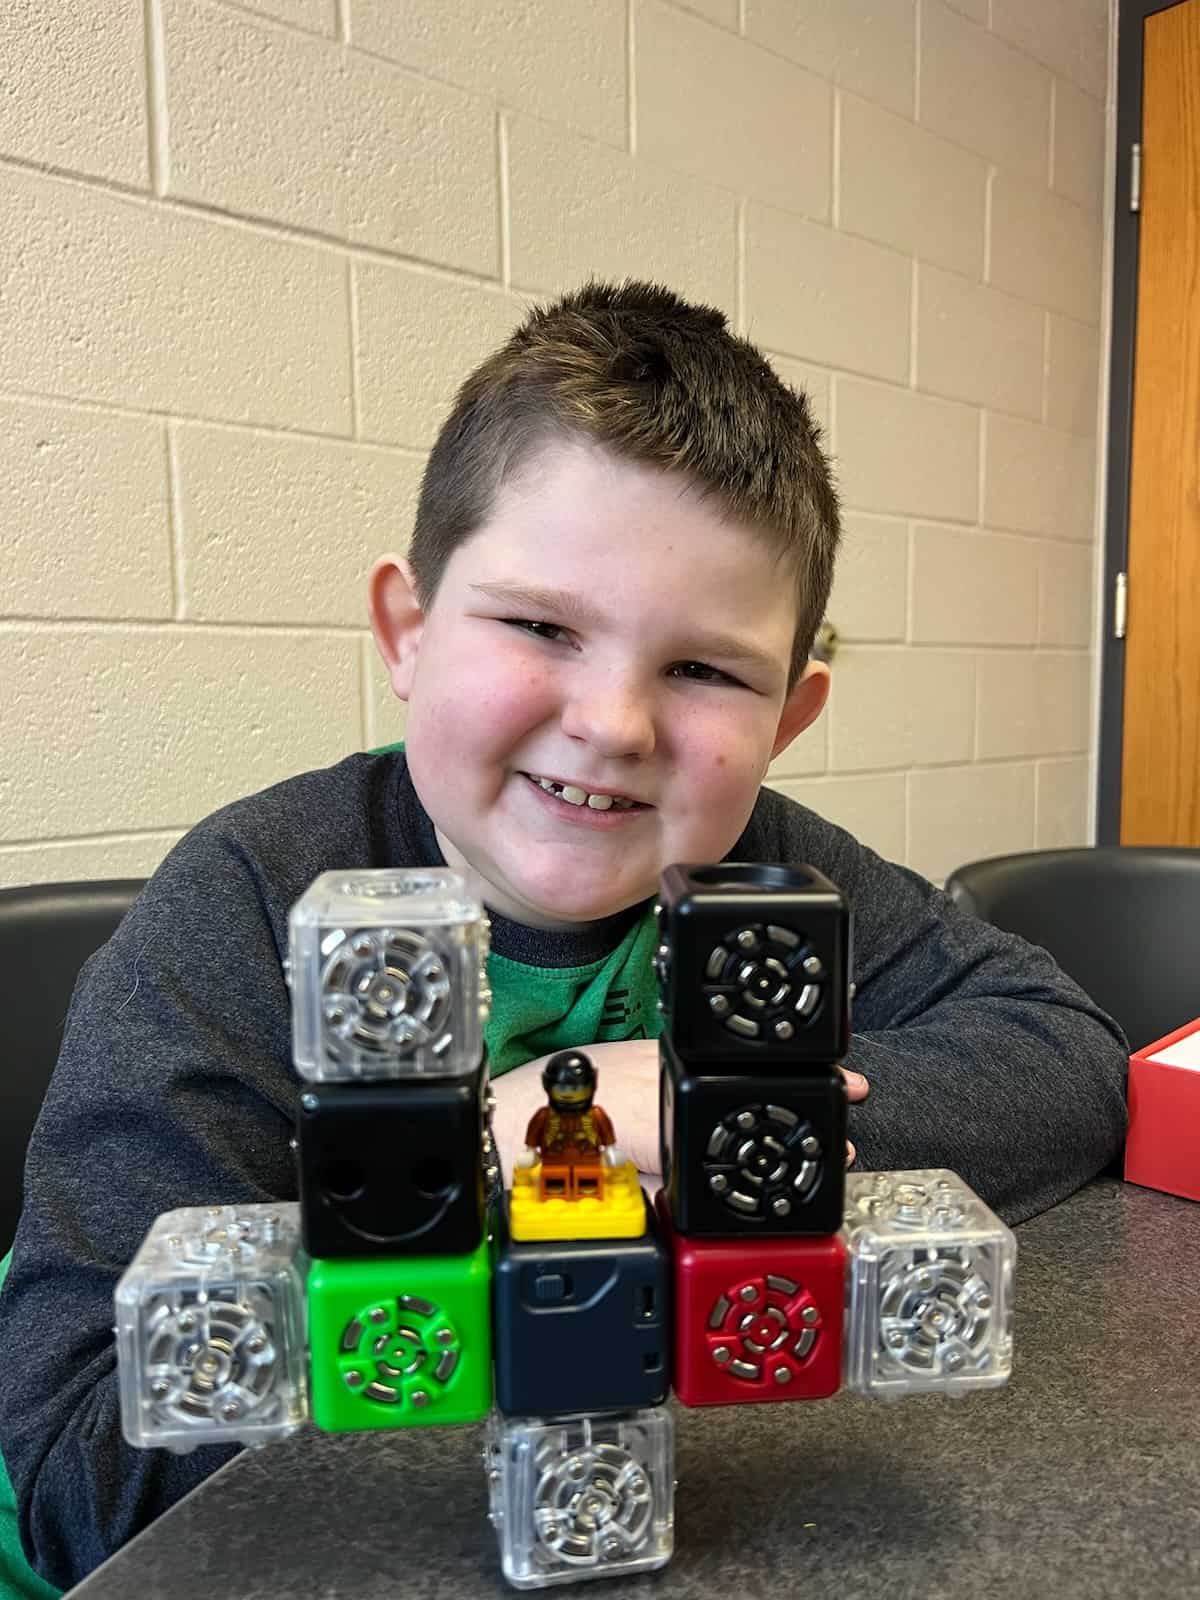 Jacob with Robotics Cubelets